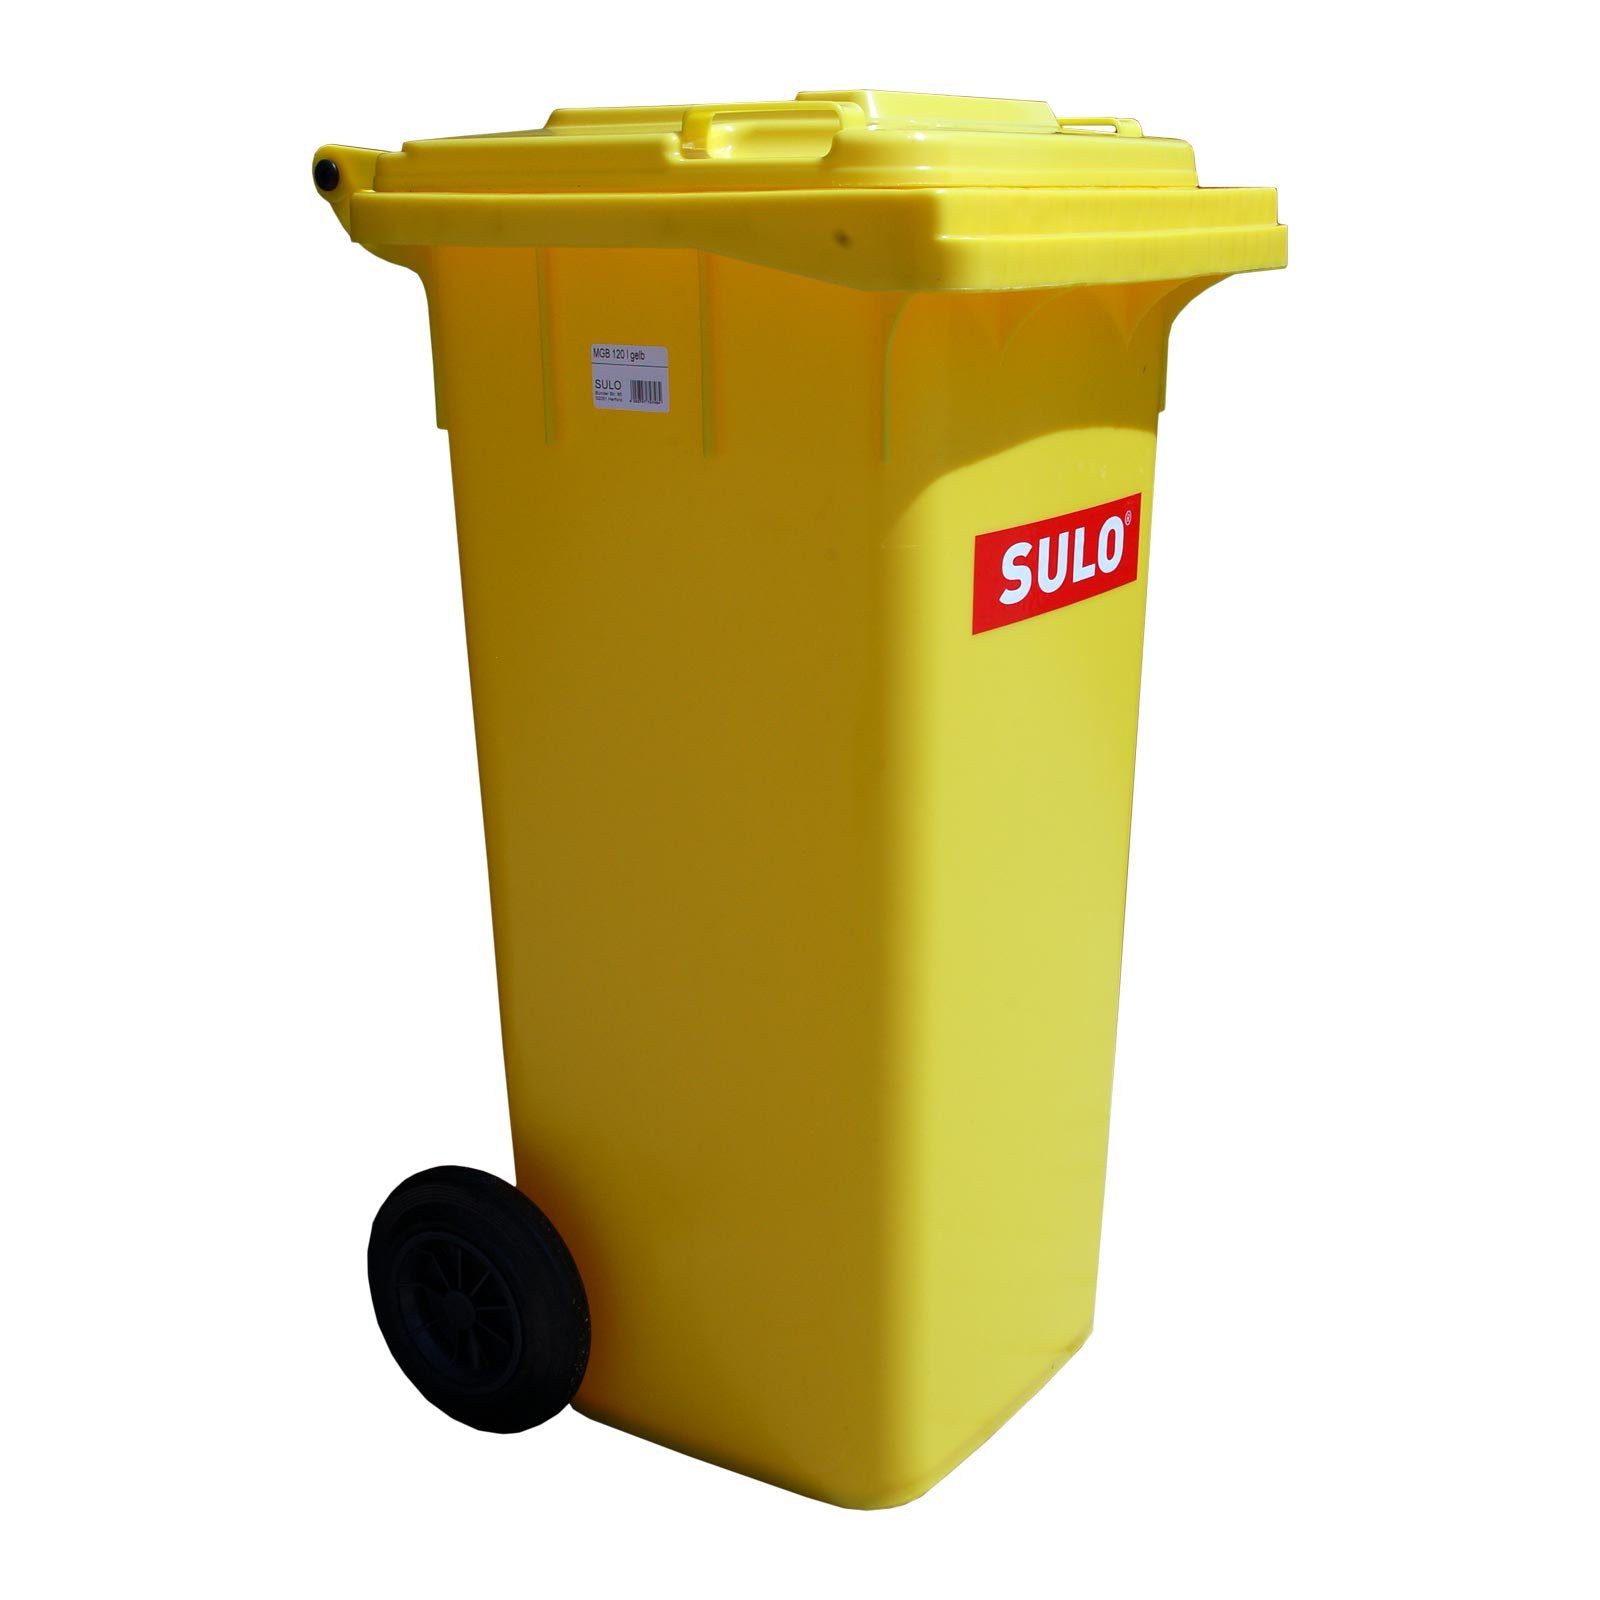 SULO Mülltrennsystem »120 L Mülleimer SULO Mülltonne gelb« online kaufen |  OTTO